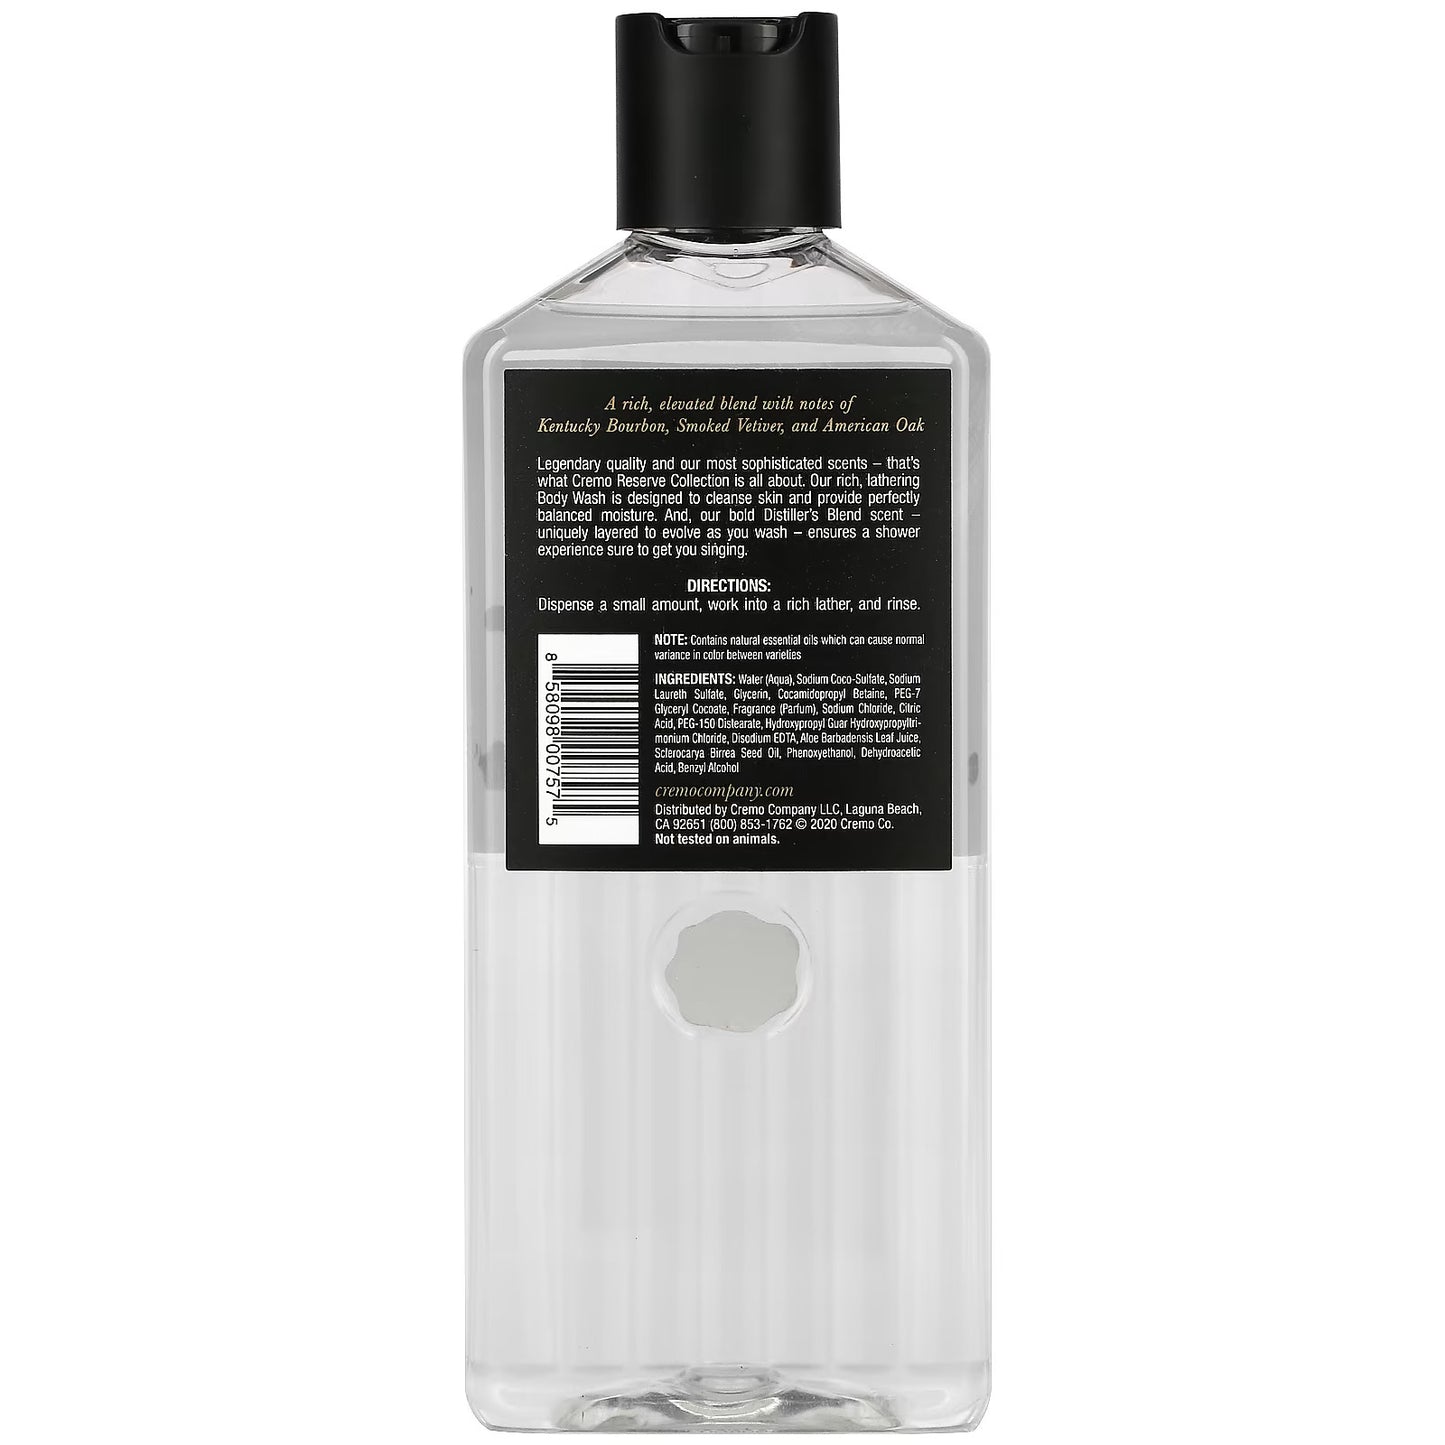 Reserve Collection, Body Wash, No. 13, Distiller's Blend, Reserve Blend, 16 fl oz (473 ml), Cremo